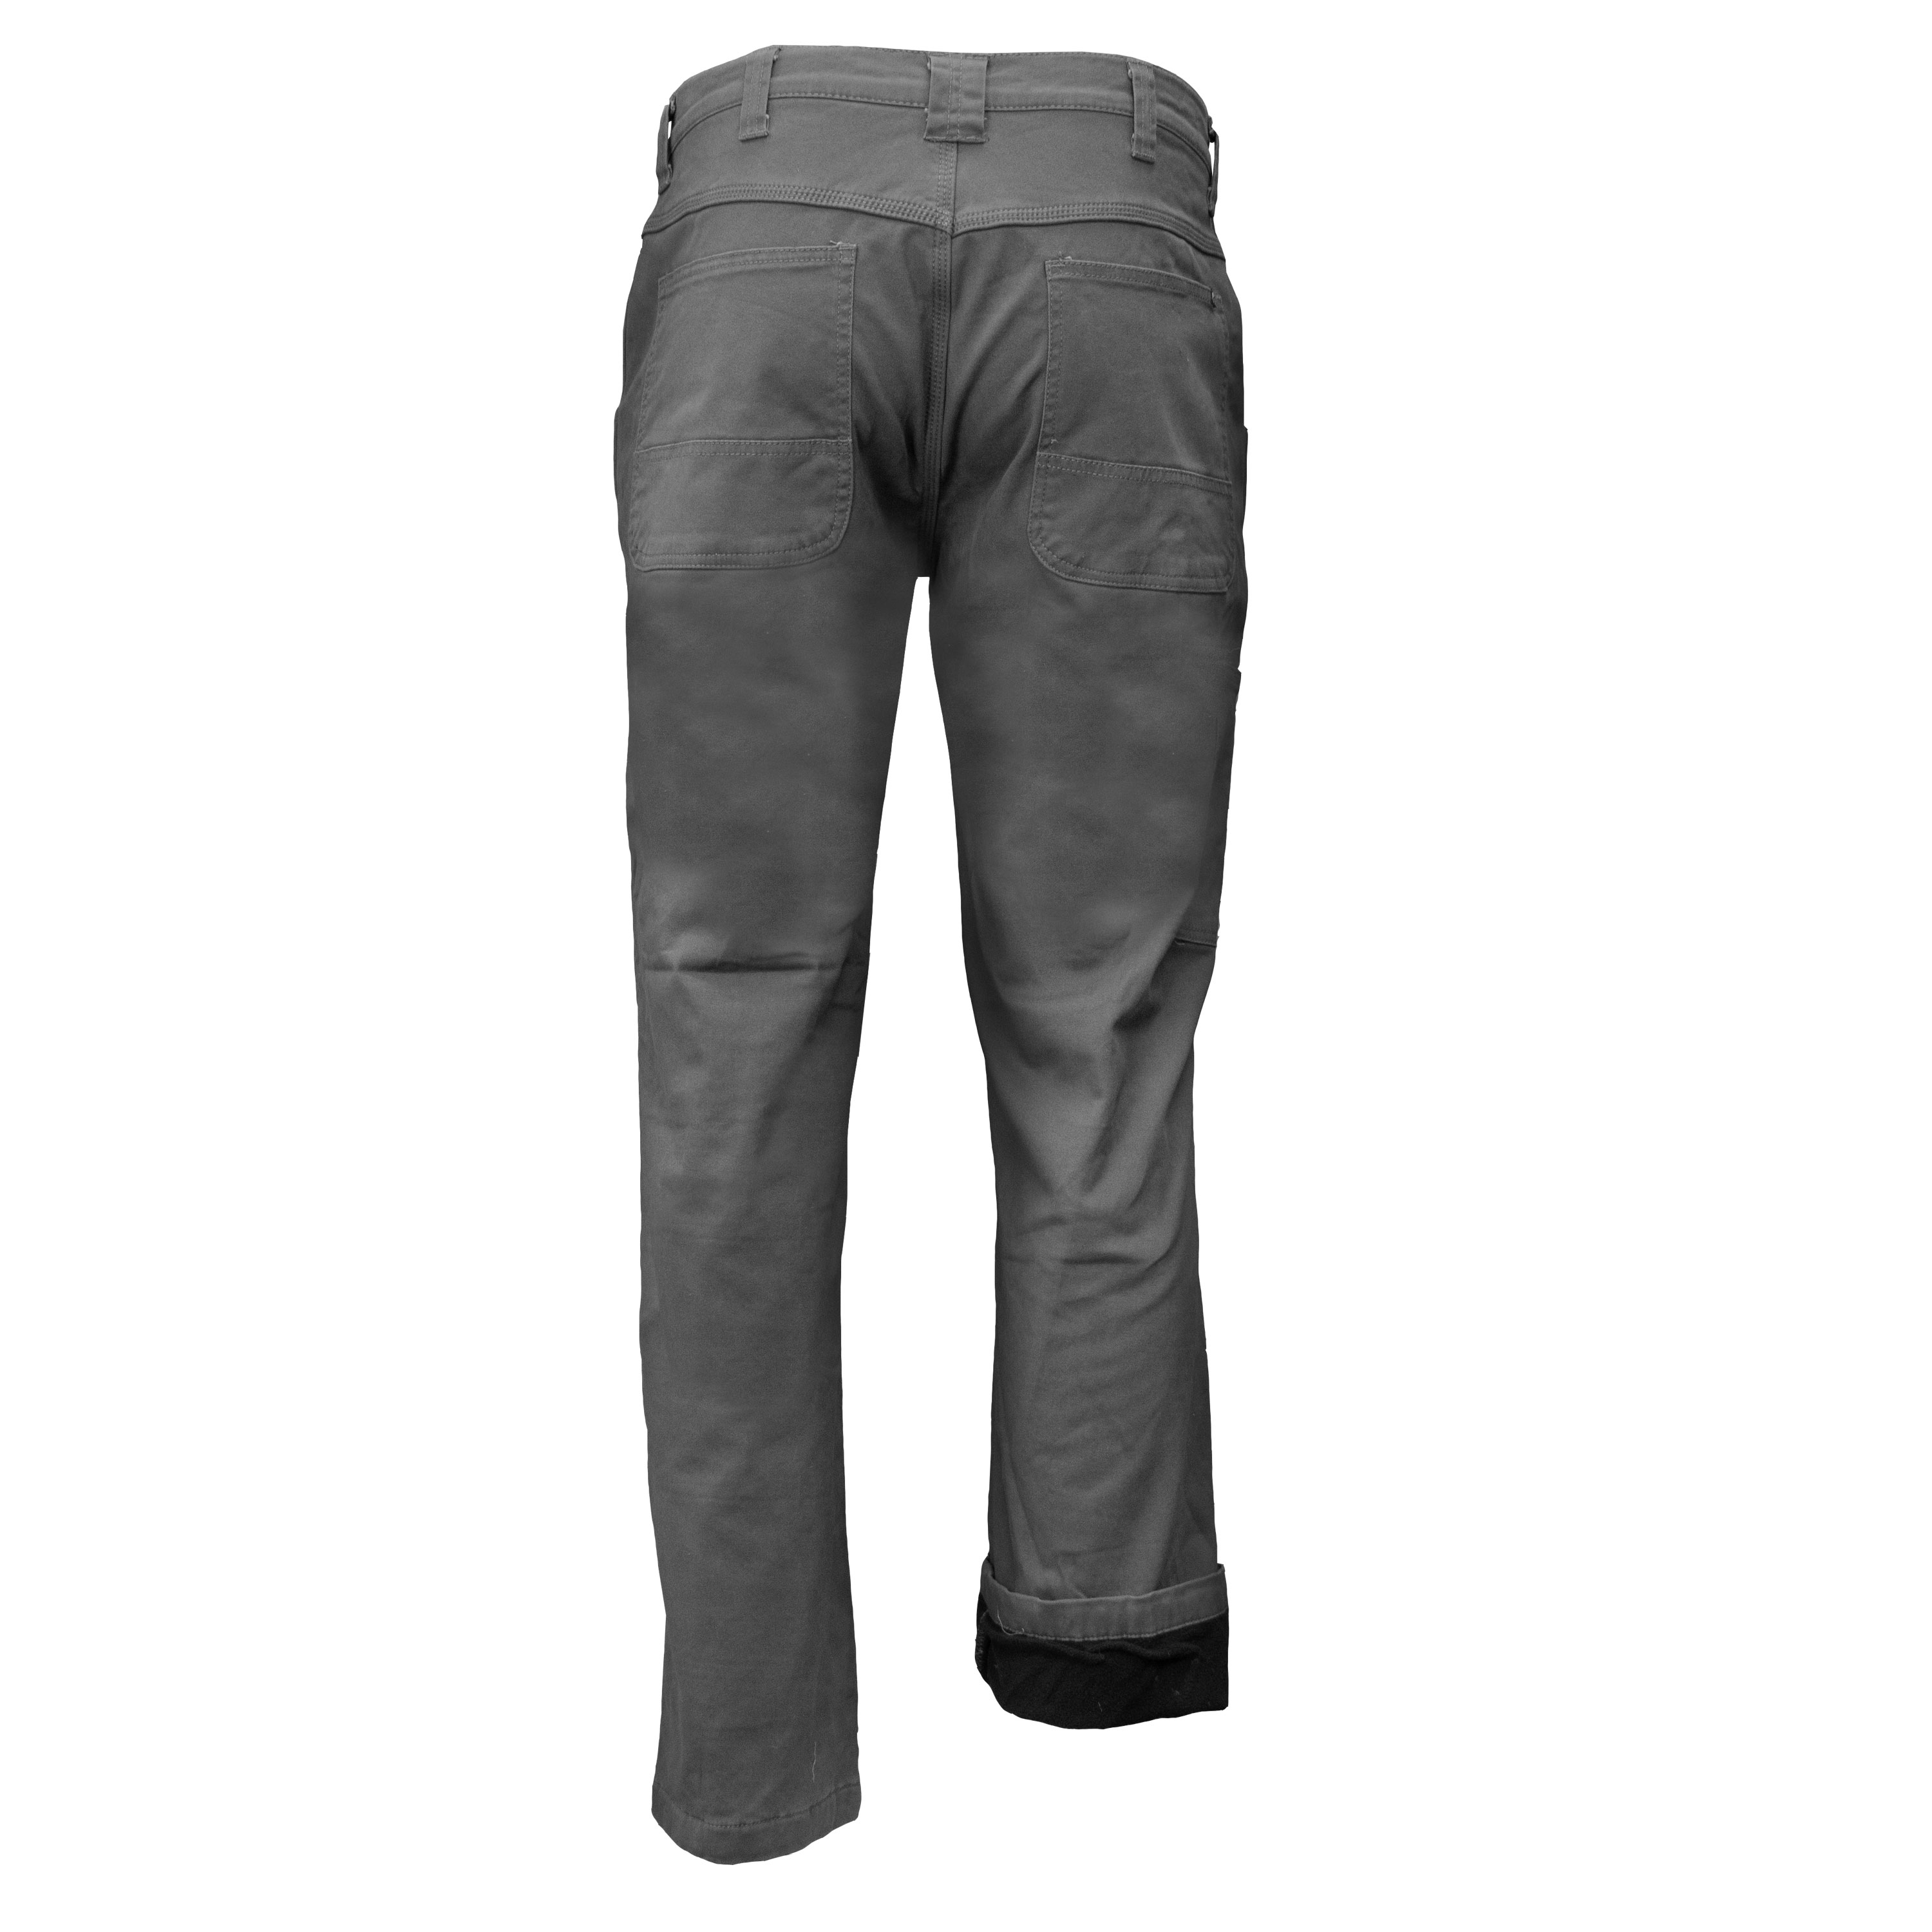 Shield Flex Men's Fleece-Lined Work Pants - KEY Apparel